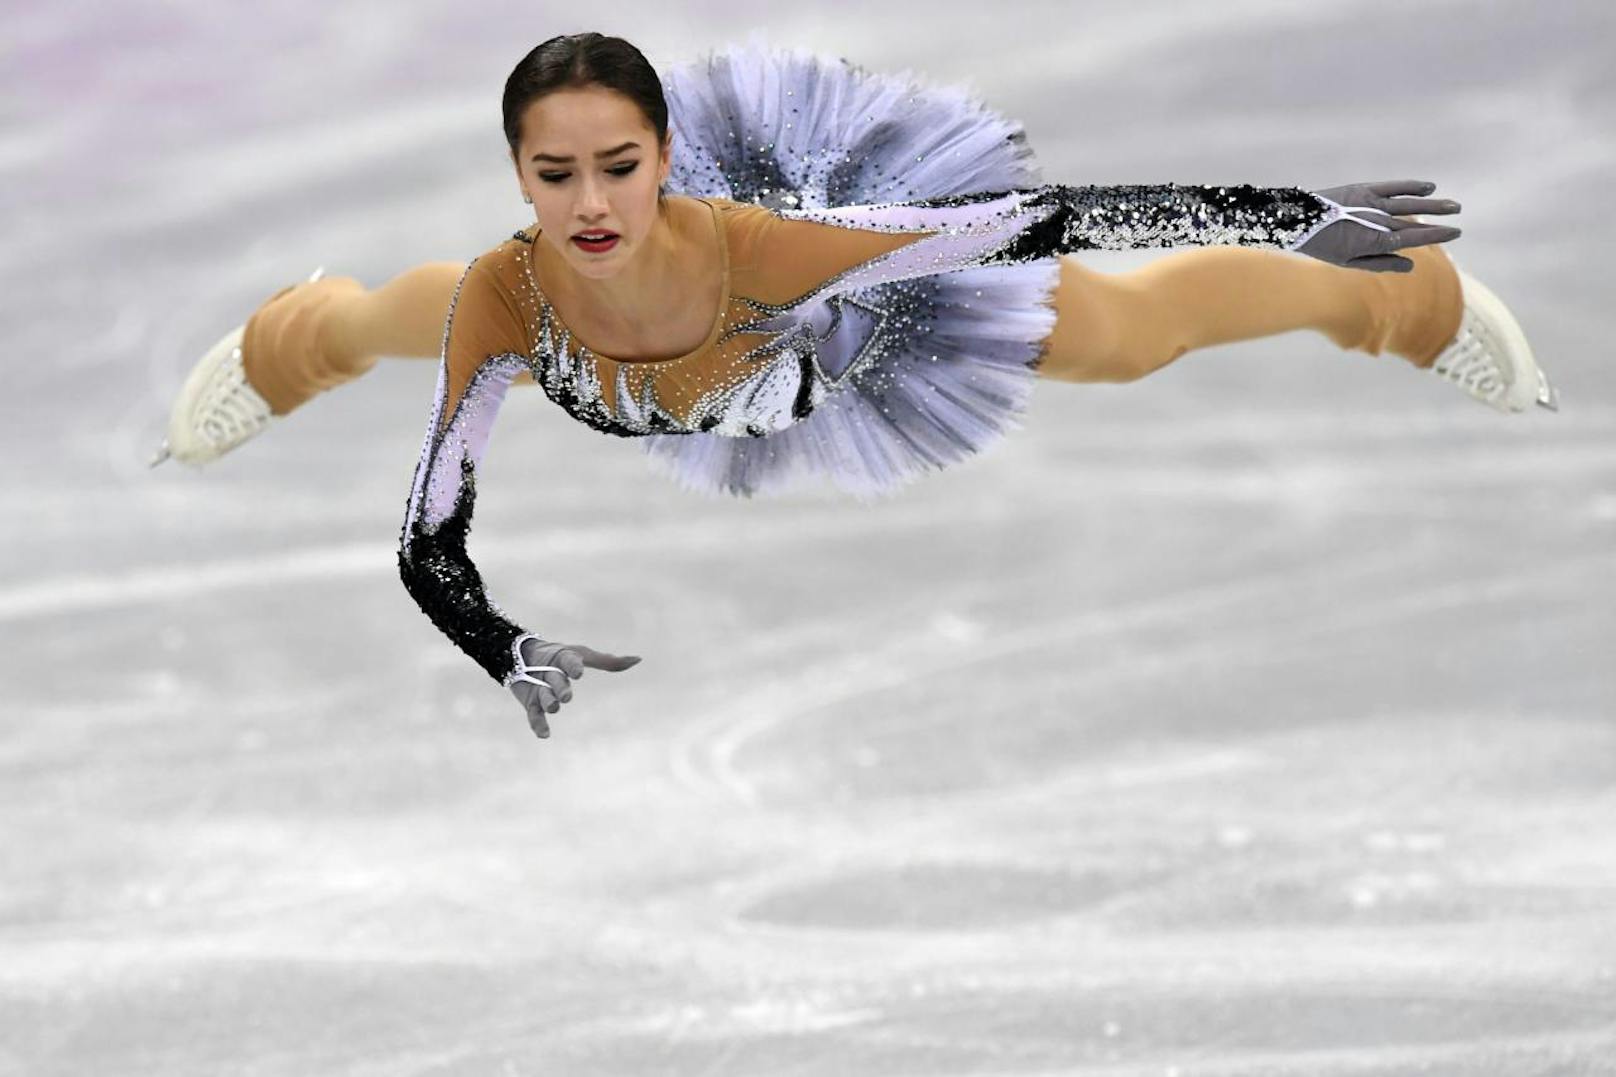 Die erst 15-Jährige Alina Sagitowa musste Russland bei Olympia in Pyeongchang retten. Die "Olympischen Athleten aus Russland" blieben bis zum 14. Wettkampftag ohne Goldmedaille, ehe sich der Teenie zur zweitjüngsten Olympiasiegerin im Eiskunstlauf krönte. Im Kurzprogramm stellte sie sogar neuen Weltrekord auf.